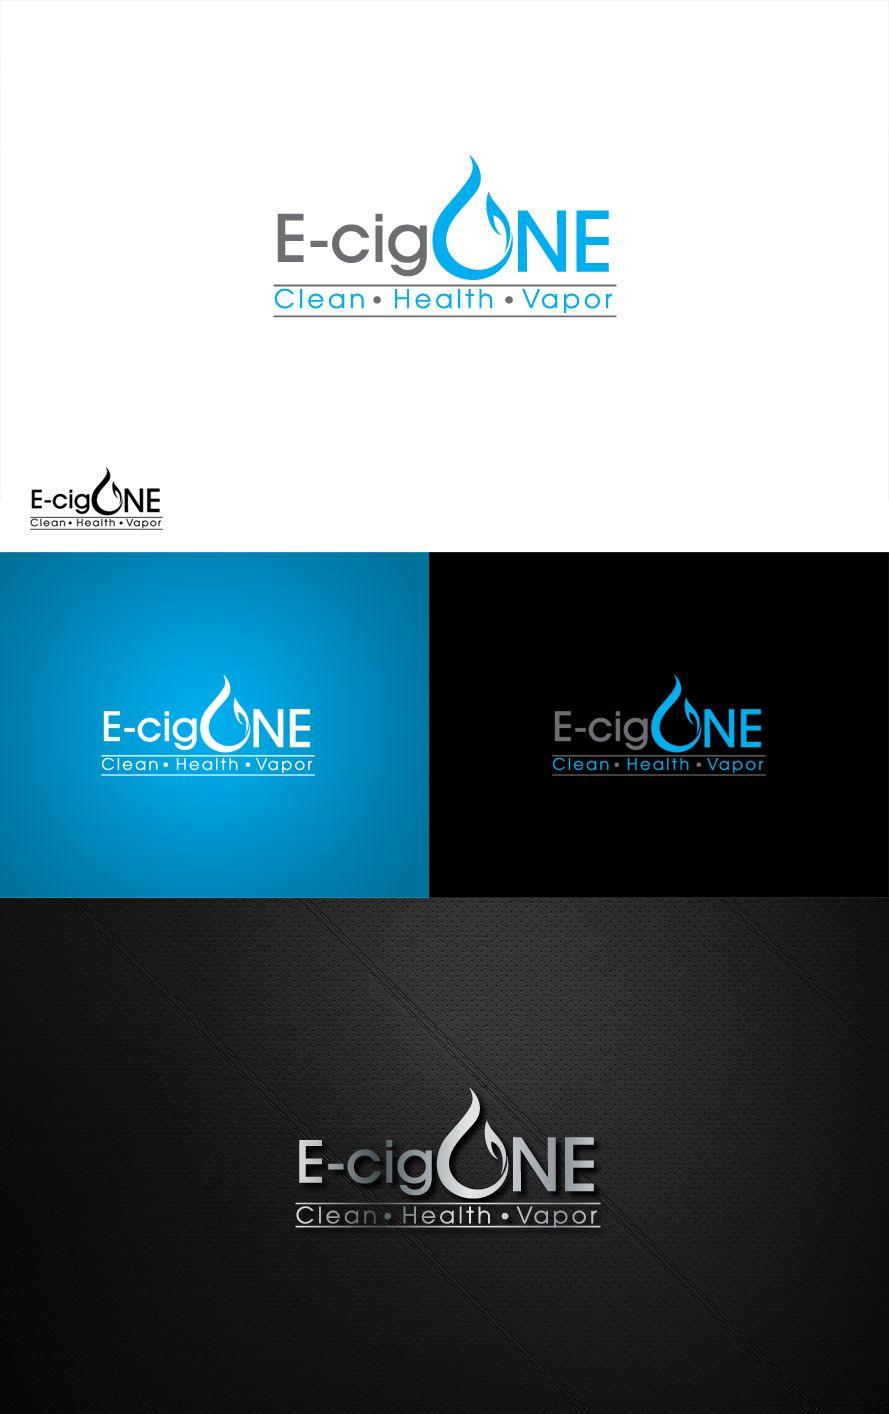 E-Cig Logo - Modern, Professional, Cigarette Logo Design For E Cig One